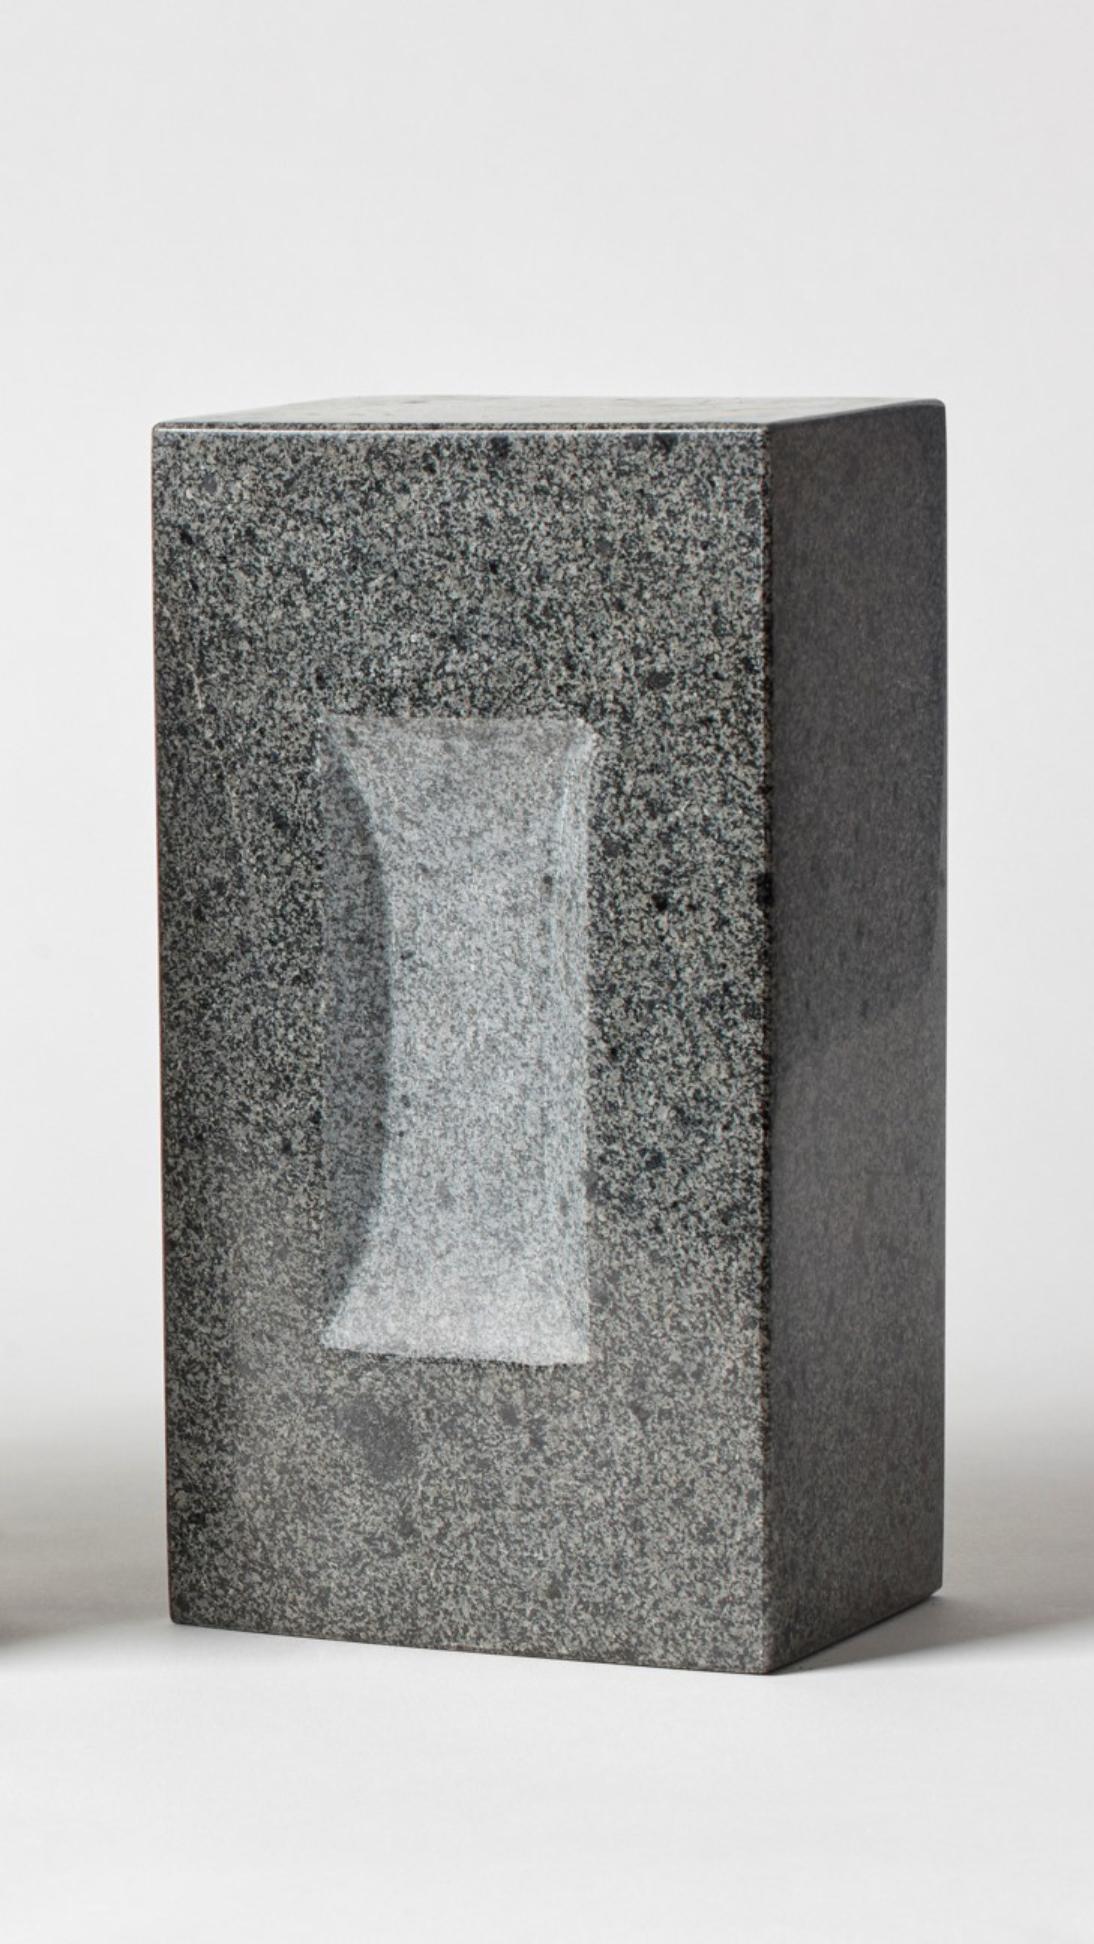 BRICK par Estudio Rafael Freyre
Dimensions : L 12,5 D 9 x H 23 cm 
Matériaux : Pierres des Andes
Également disponible : Autres finitions disponibles,

La brique est un élément constructif générique qui fait partie de l'imaginaire urbain. Au Pérou,